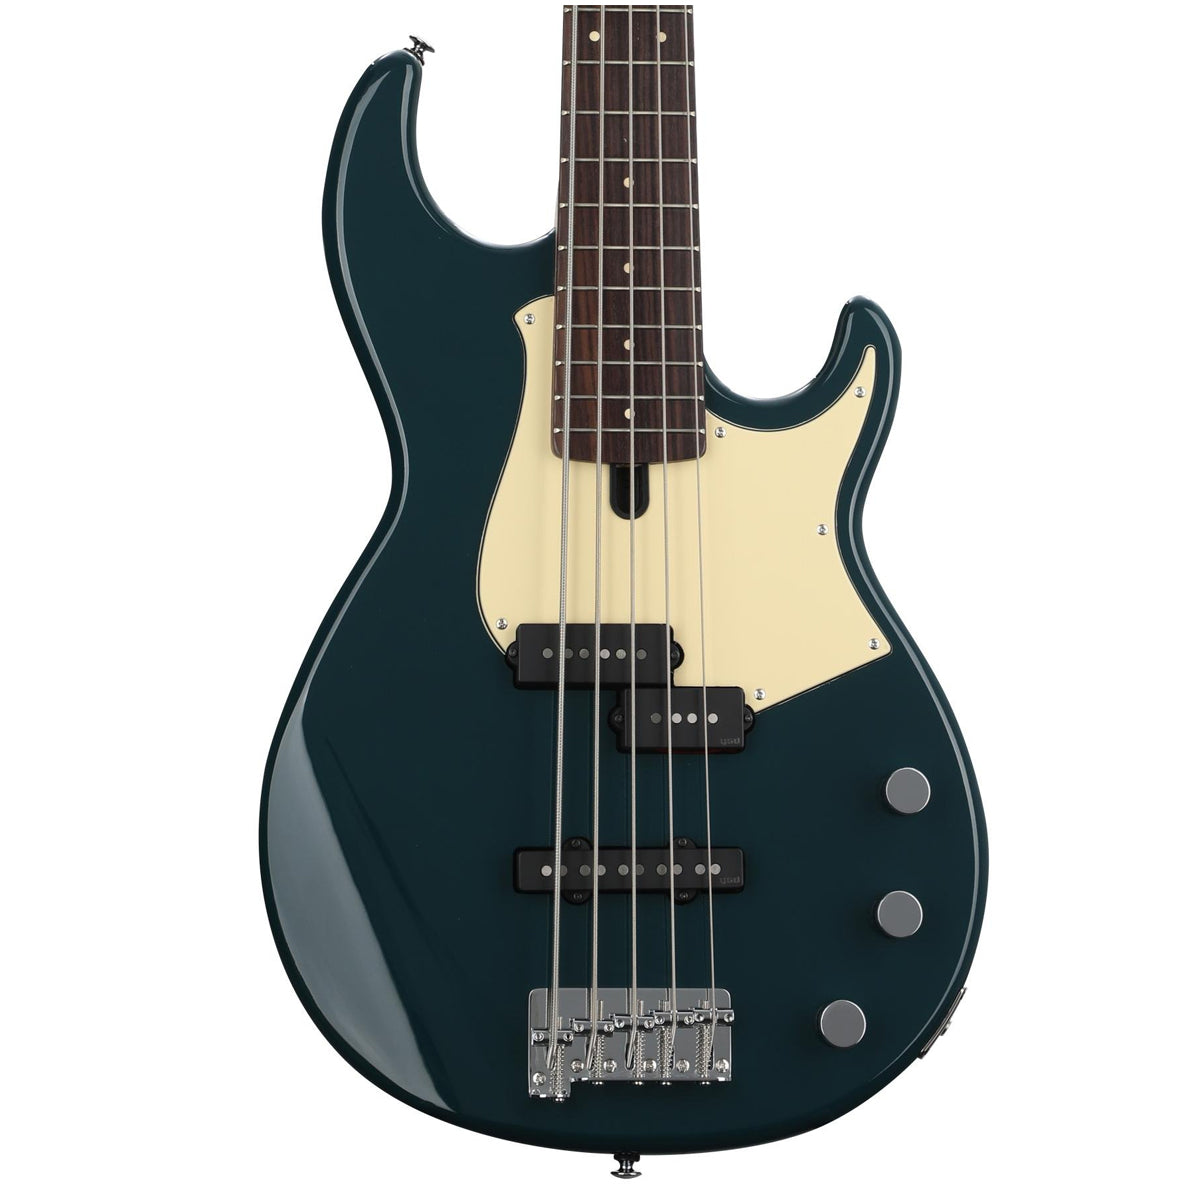 Yamaha BB 435 Electric 5-String Bass Guitar - Teal Blue